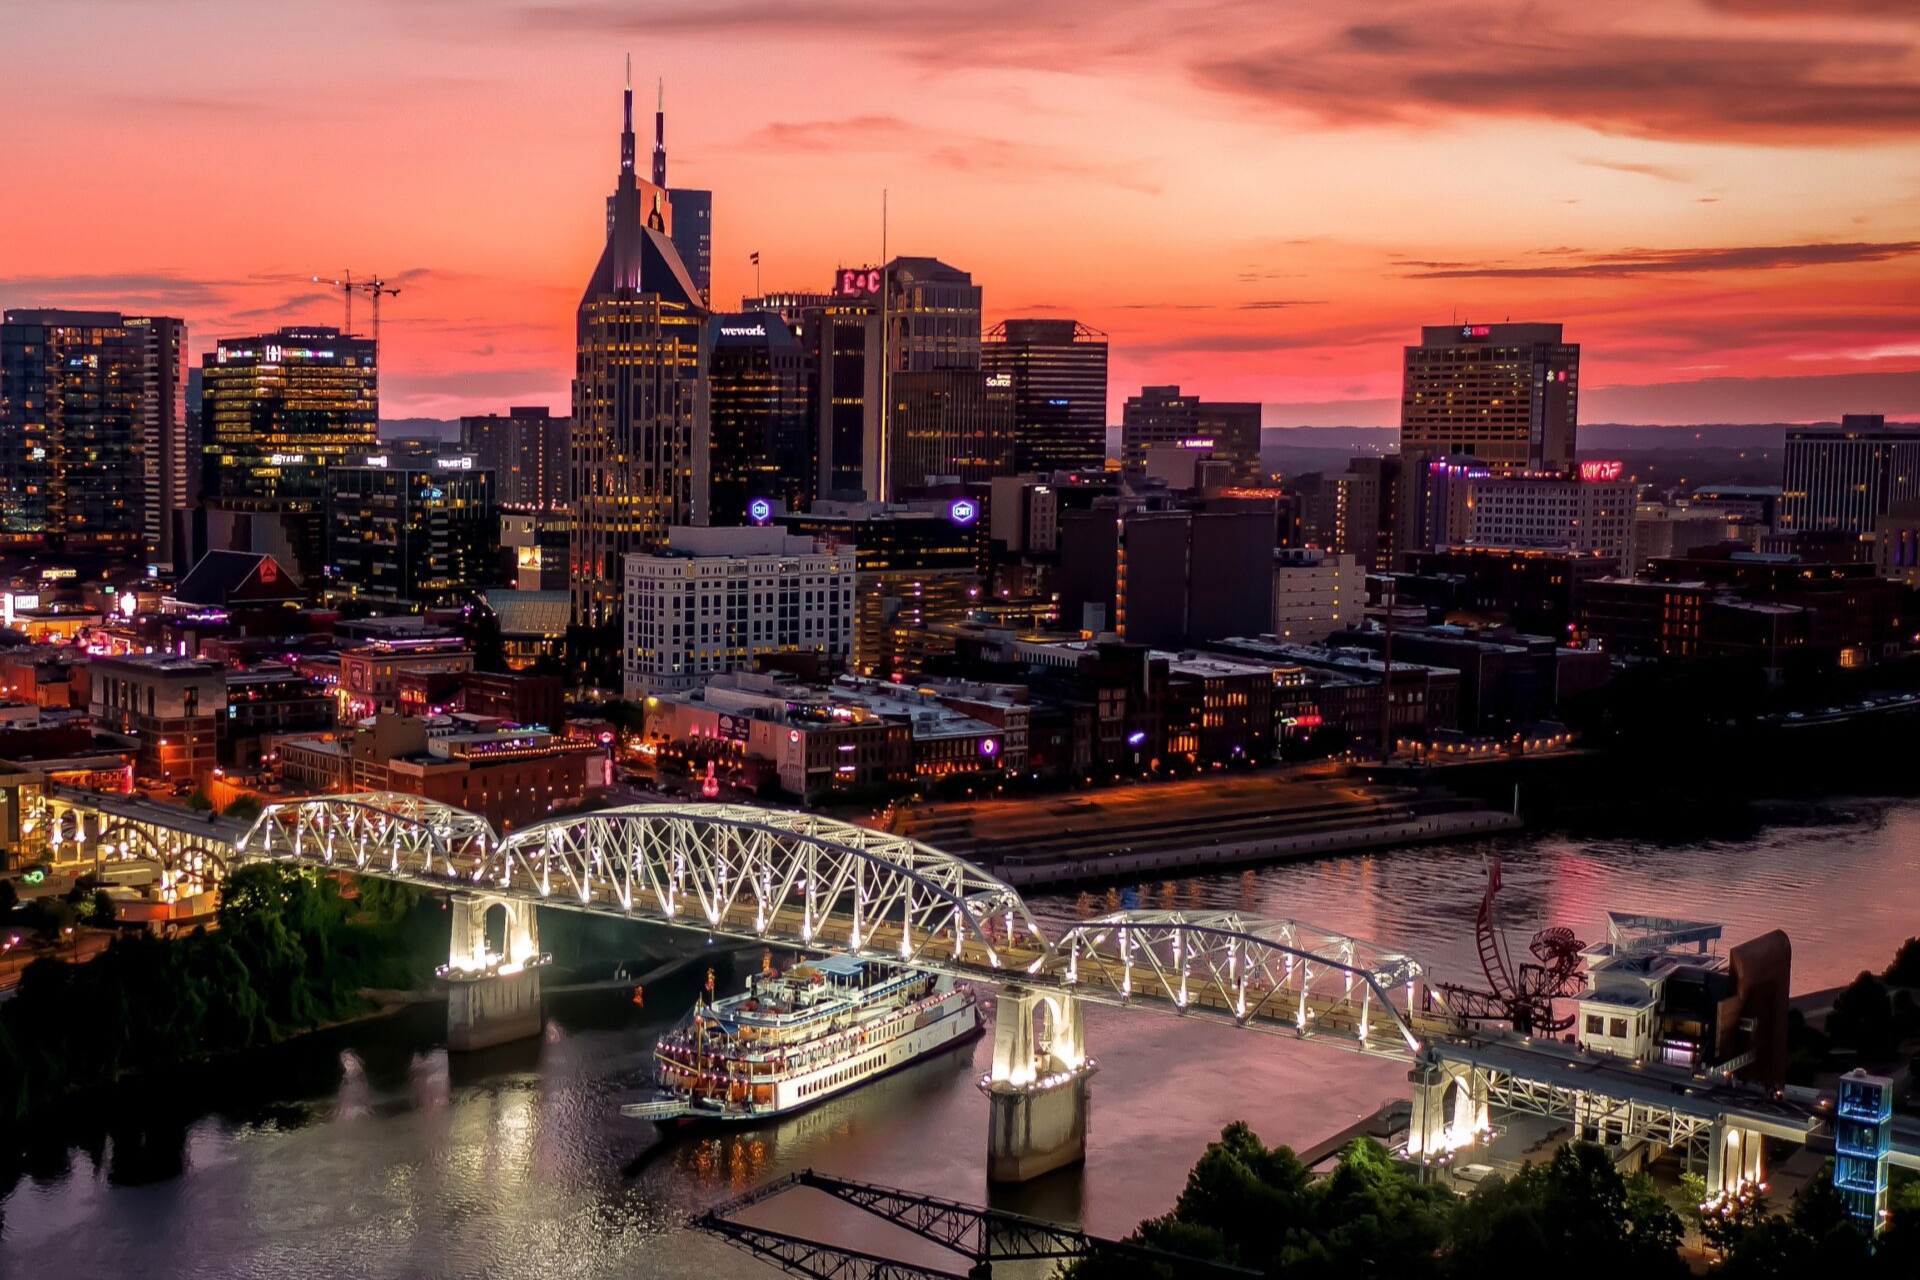 Nashville, TN skyline at night.